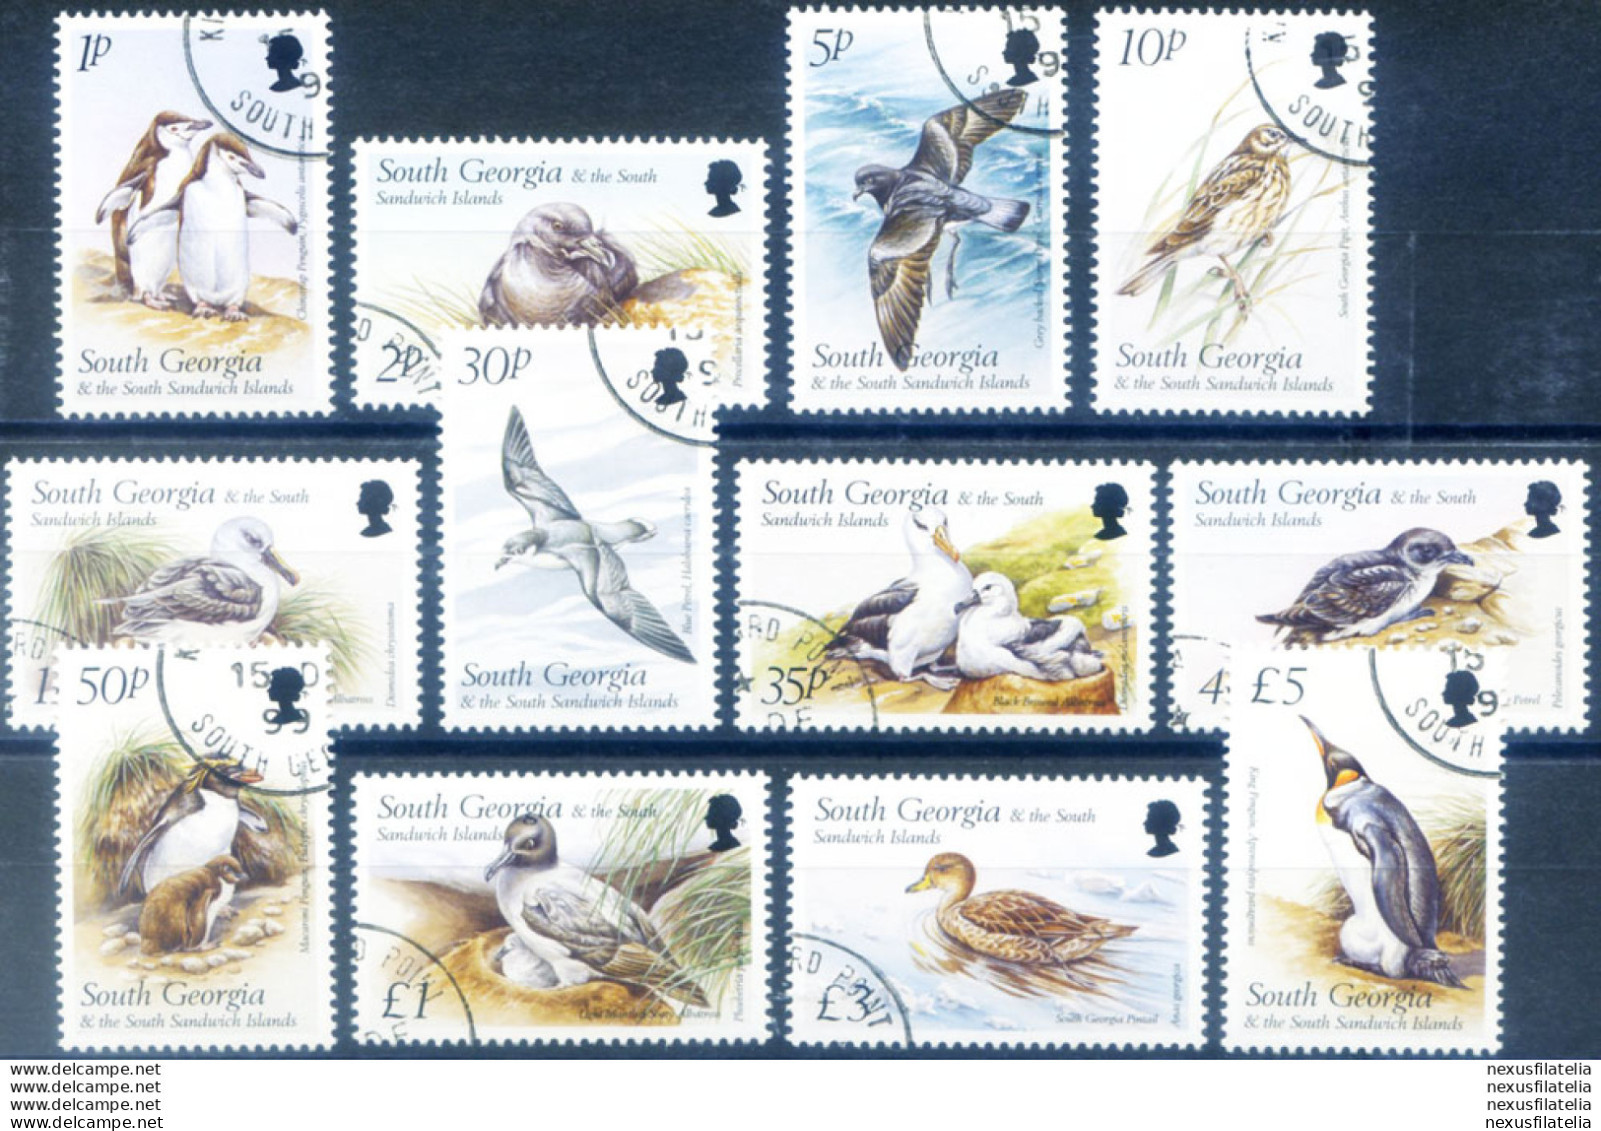 South Georgia. Definitiva. Fauna. Uccelli 1999. Usati. - Falkland Islands